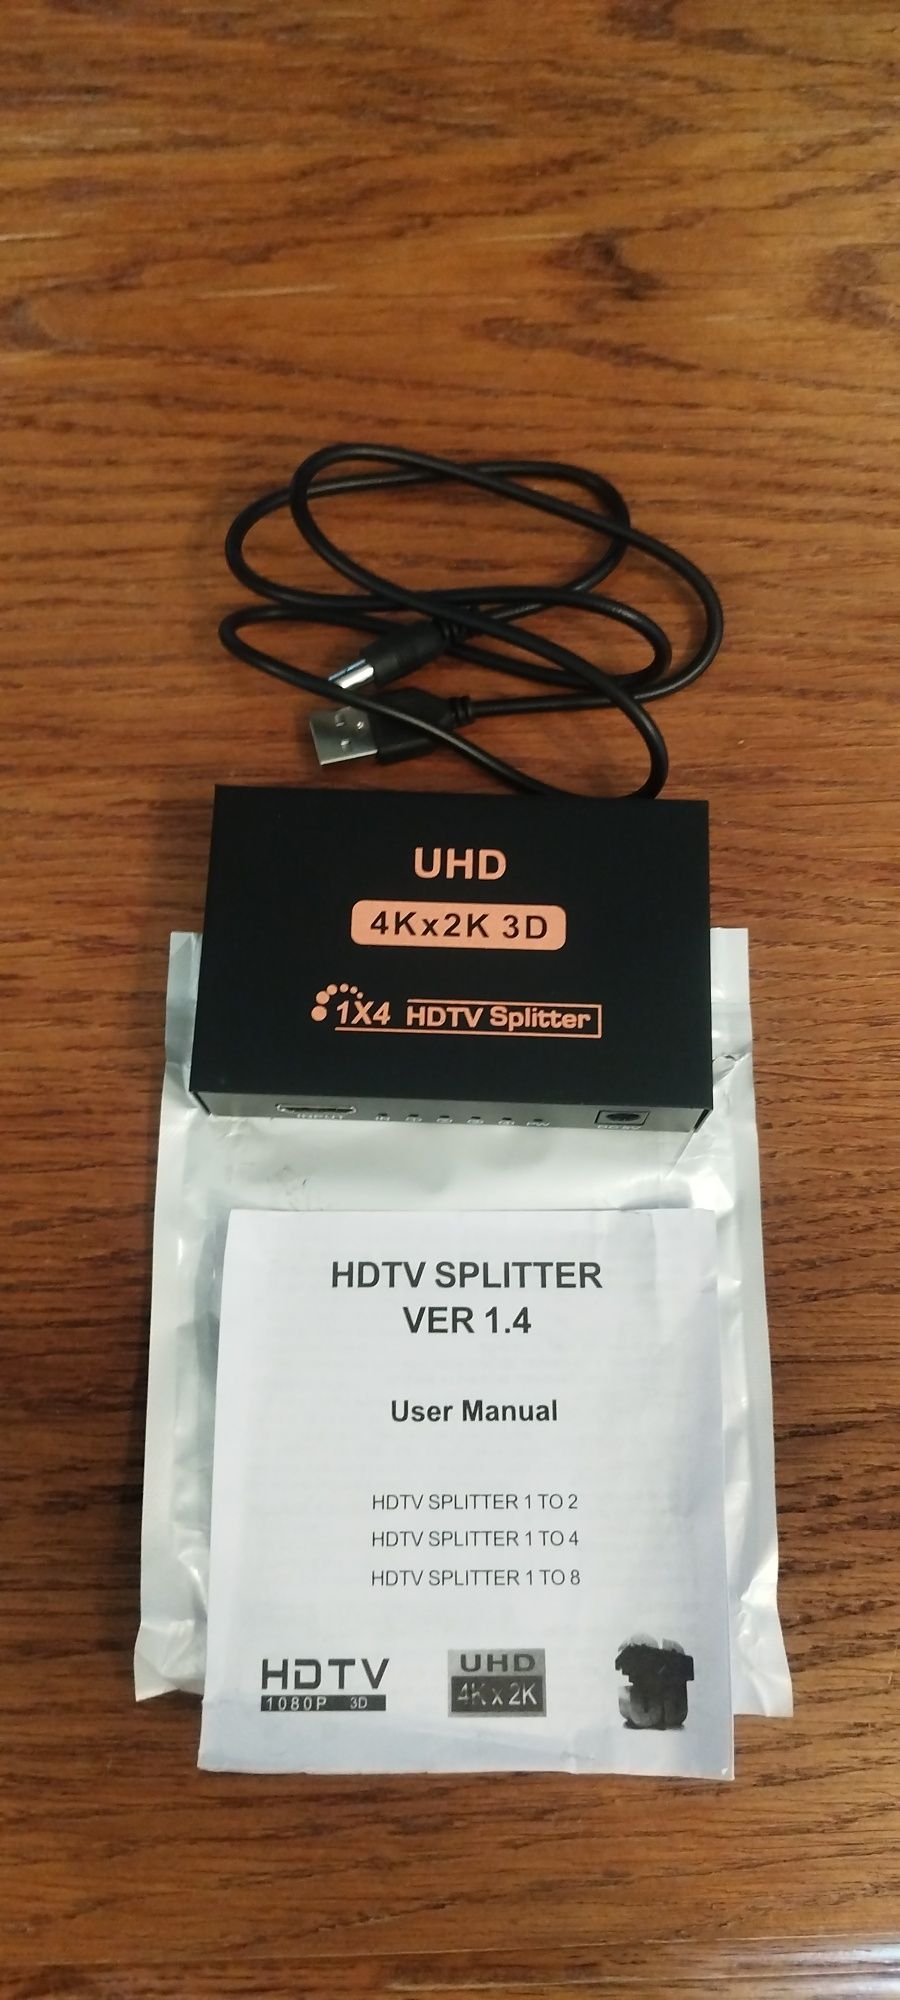 UHD Splitter do TV.

4Kx2K 3D

1X4 HDTV Splitter

HDTV SPLITTER VE